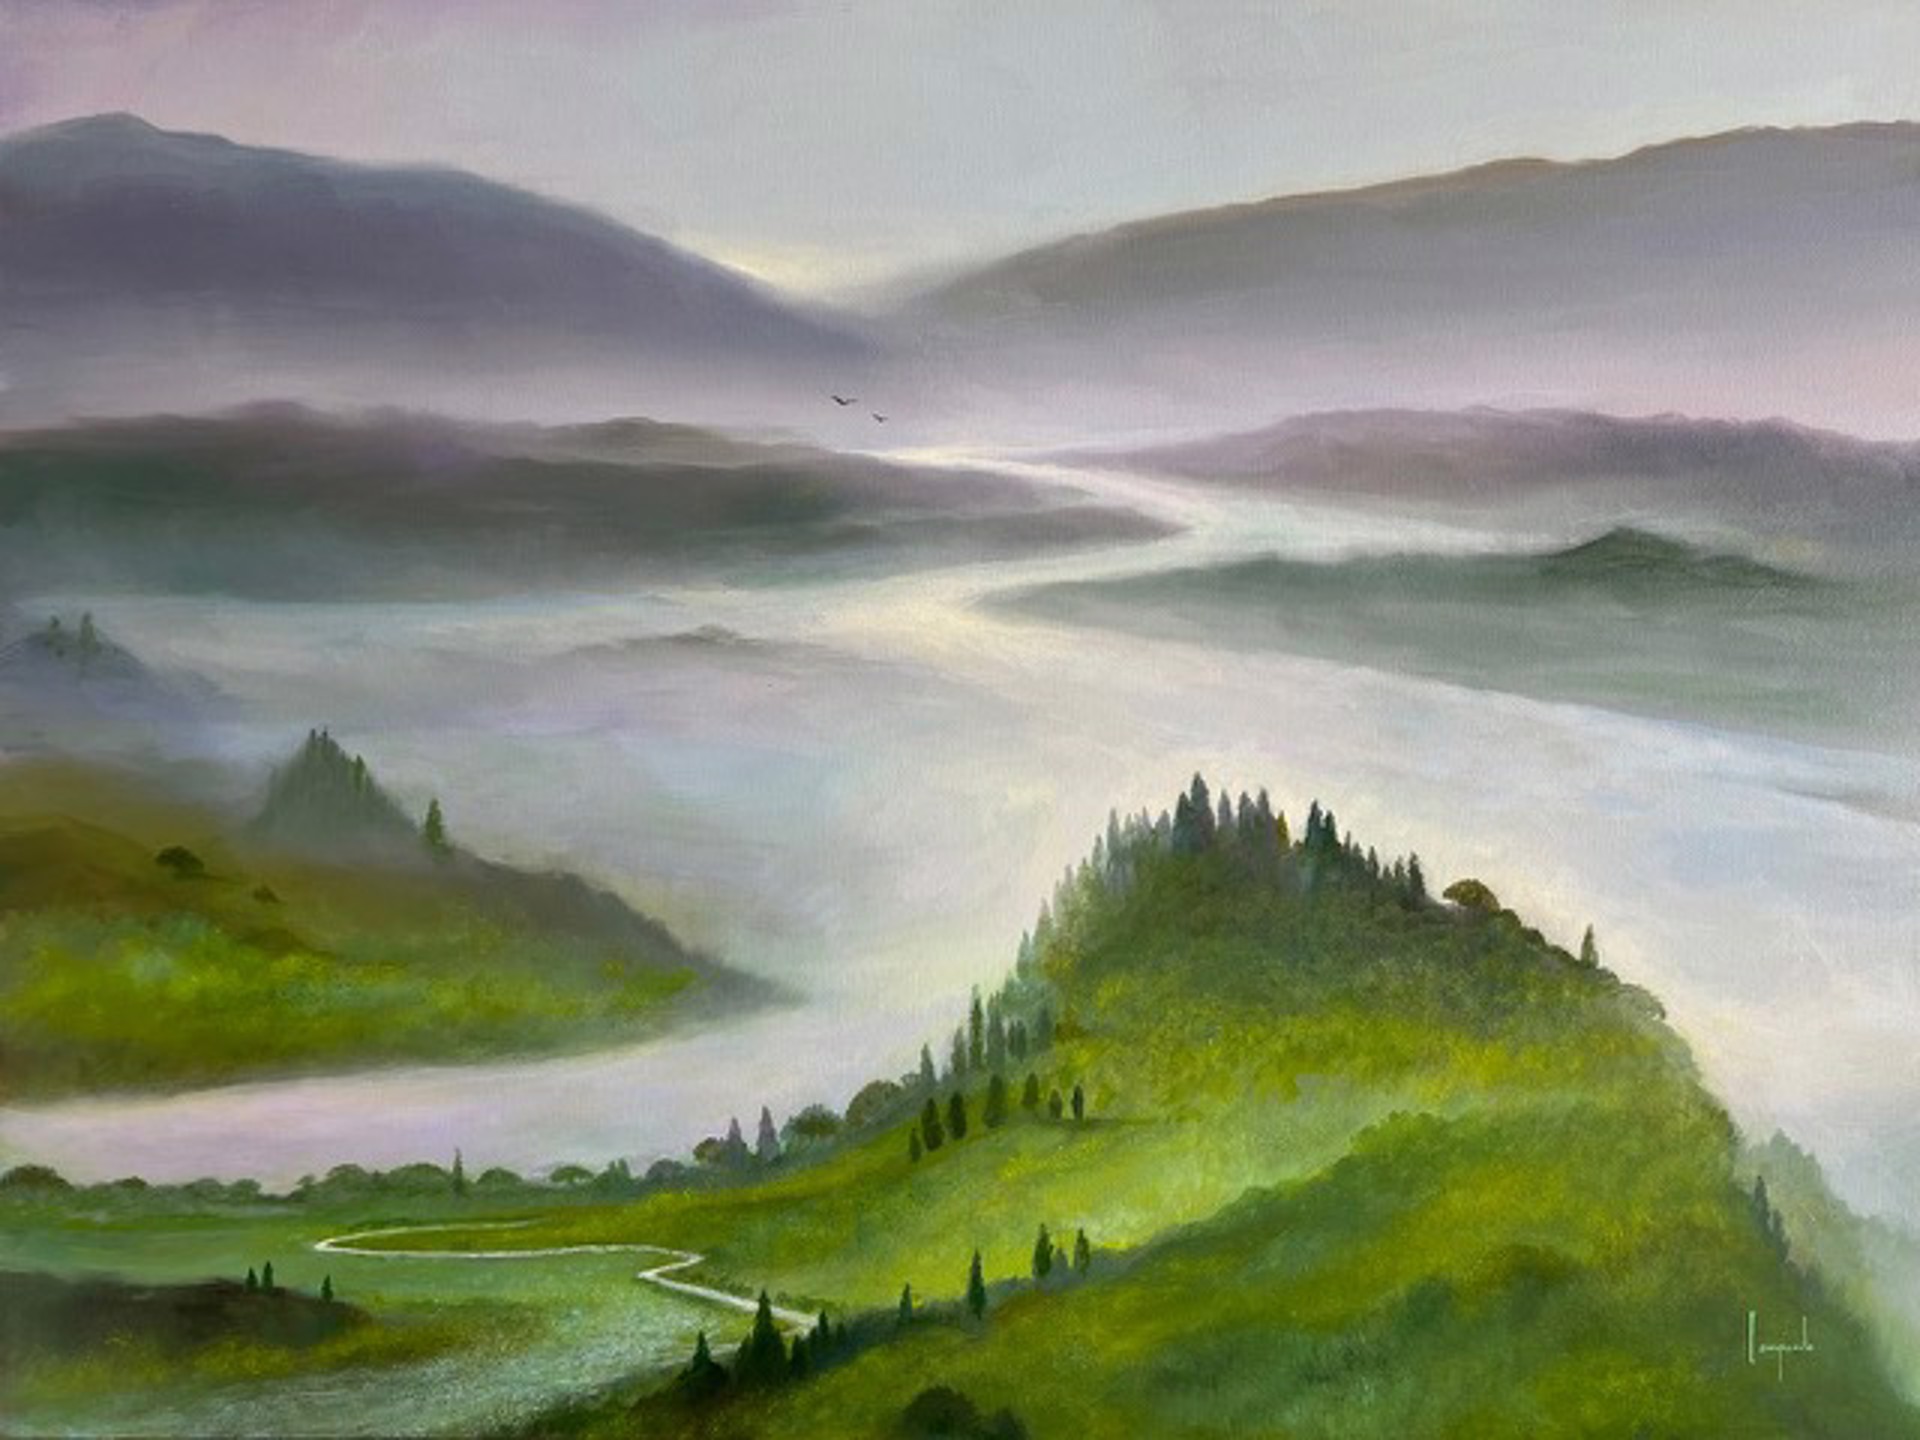 Into The Mist by Dario Campanile